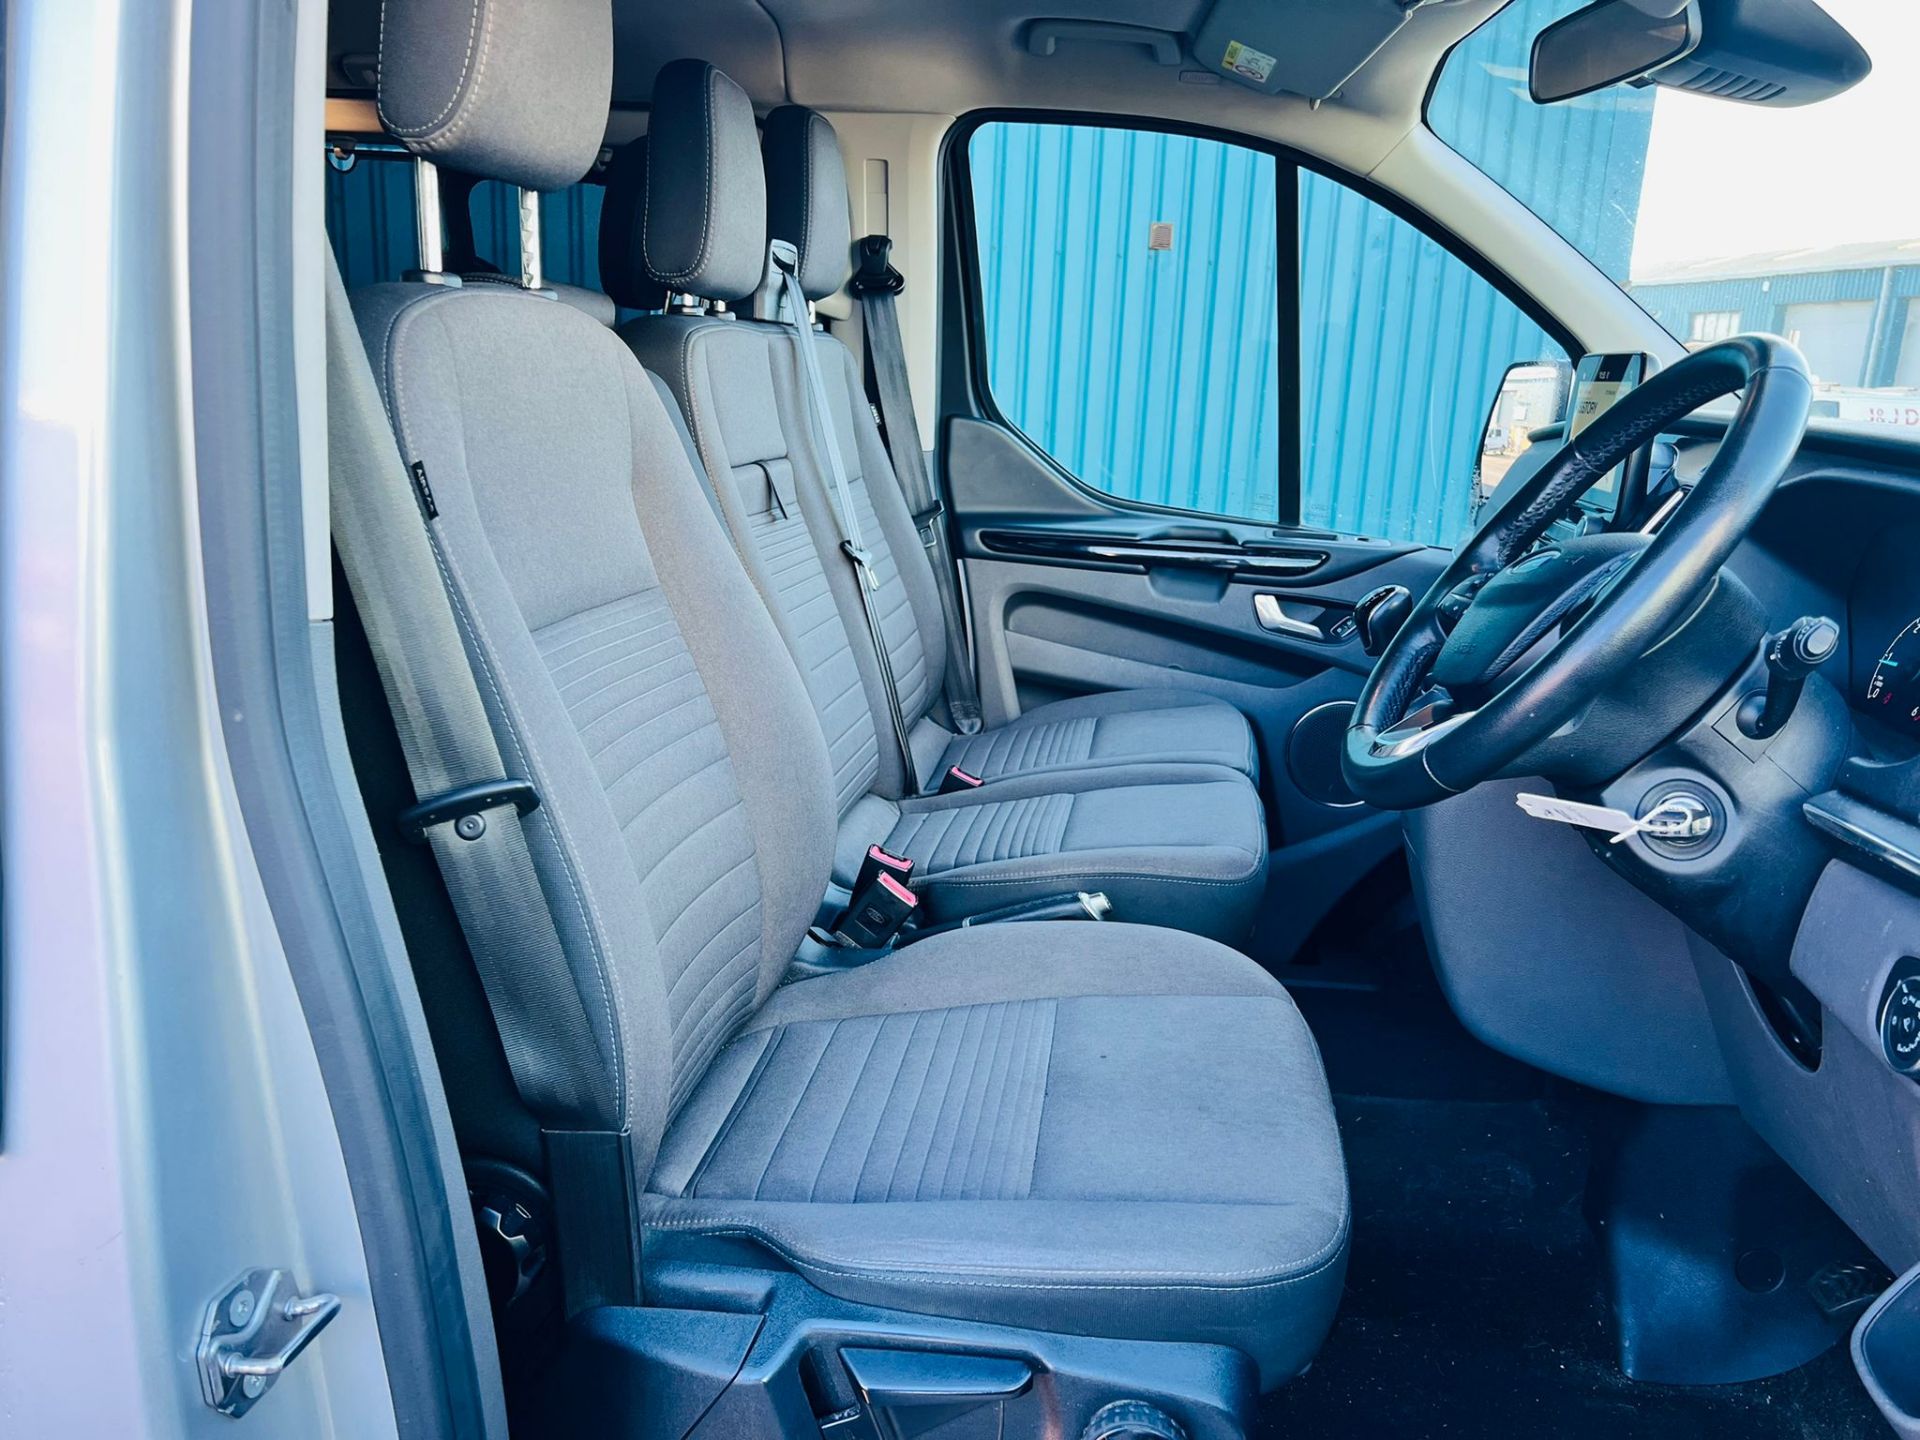 (Reserve Met) Ford Transit Custom 310 130 2.0 Tdci Titanium 9 Seater MiniBus 2019 Model - Air Con - - Image 24 of 36